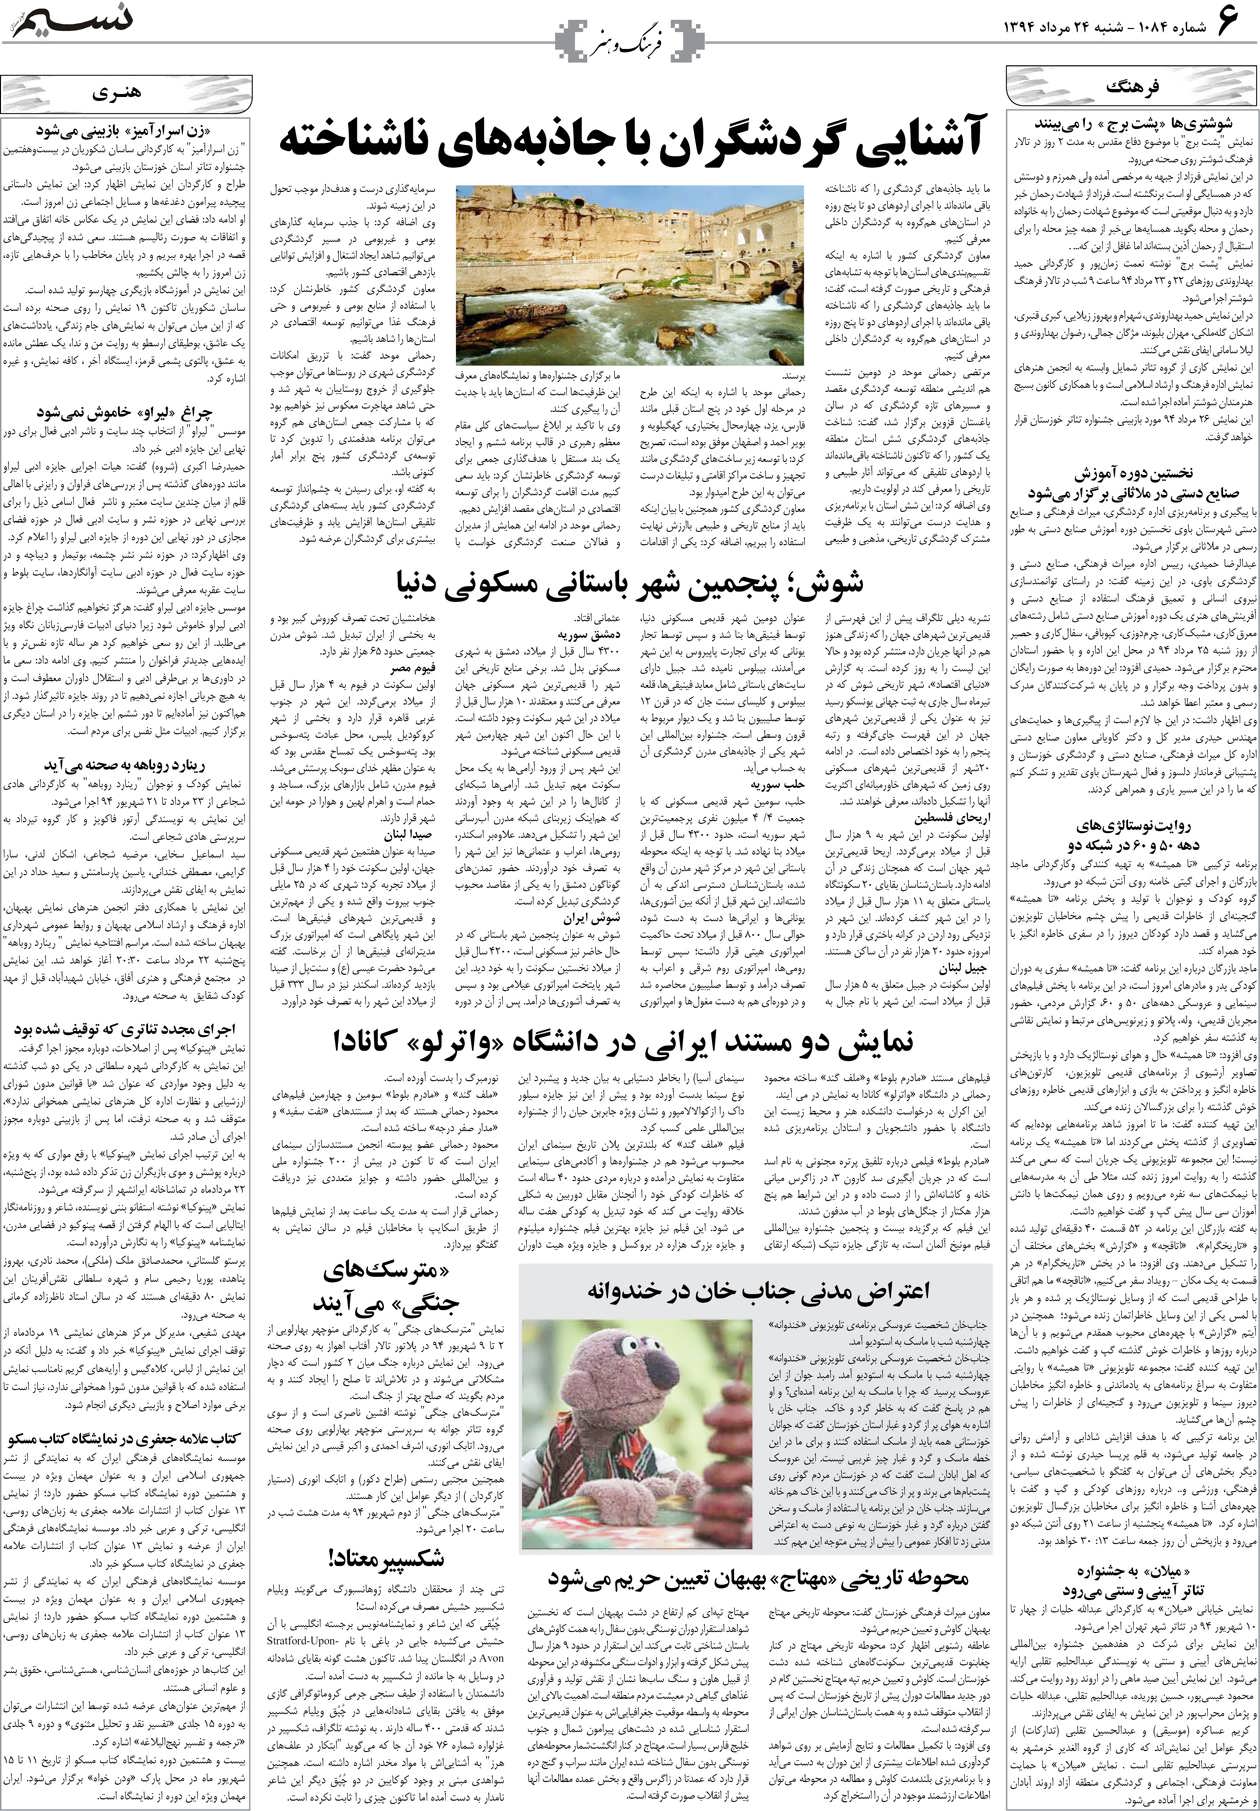 صفحه فرهنگ و هنر روزنامه نسیم شماره 1084